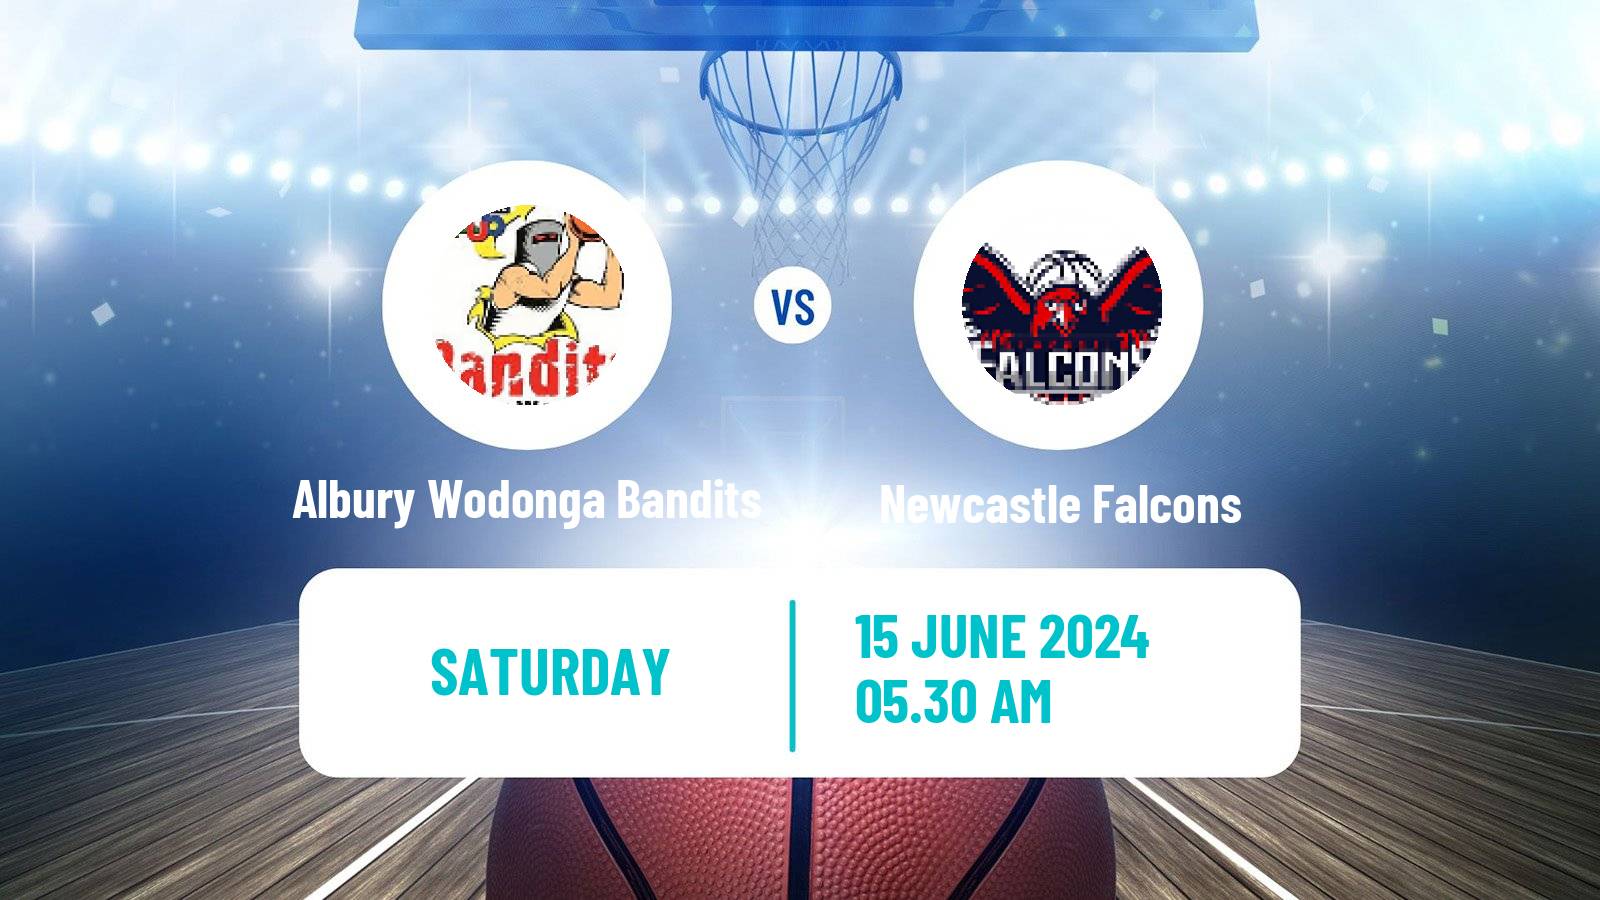 Basketball Australian NBL1 East Albury Wodonga Bandits - Newcastle Falcons